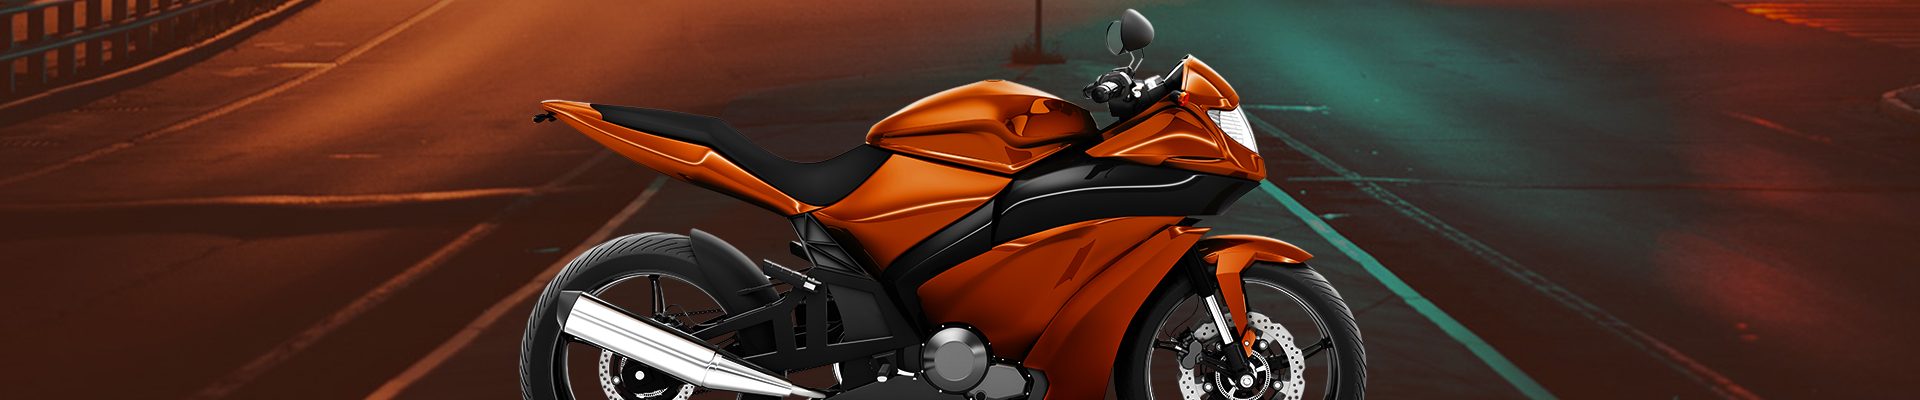 Köp en motorcykel, ATV eller UTV från MC Guiden i Vetlanda